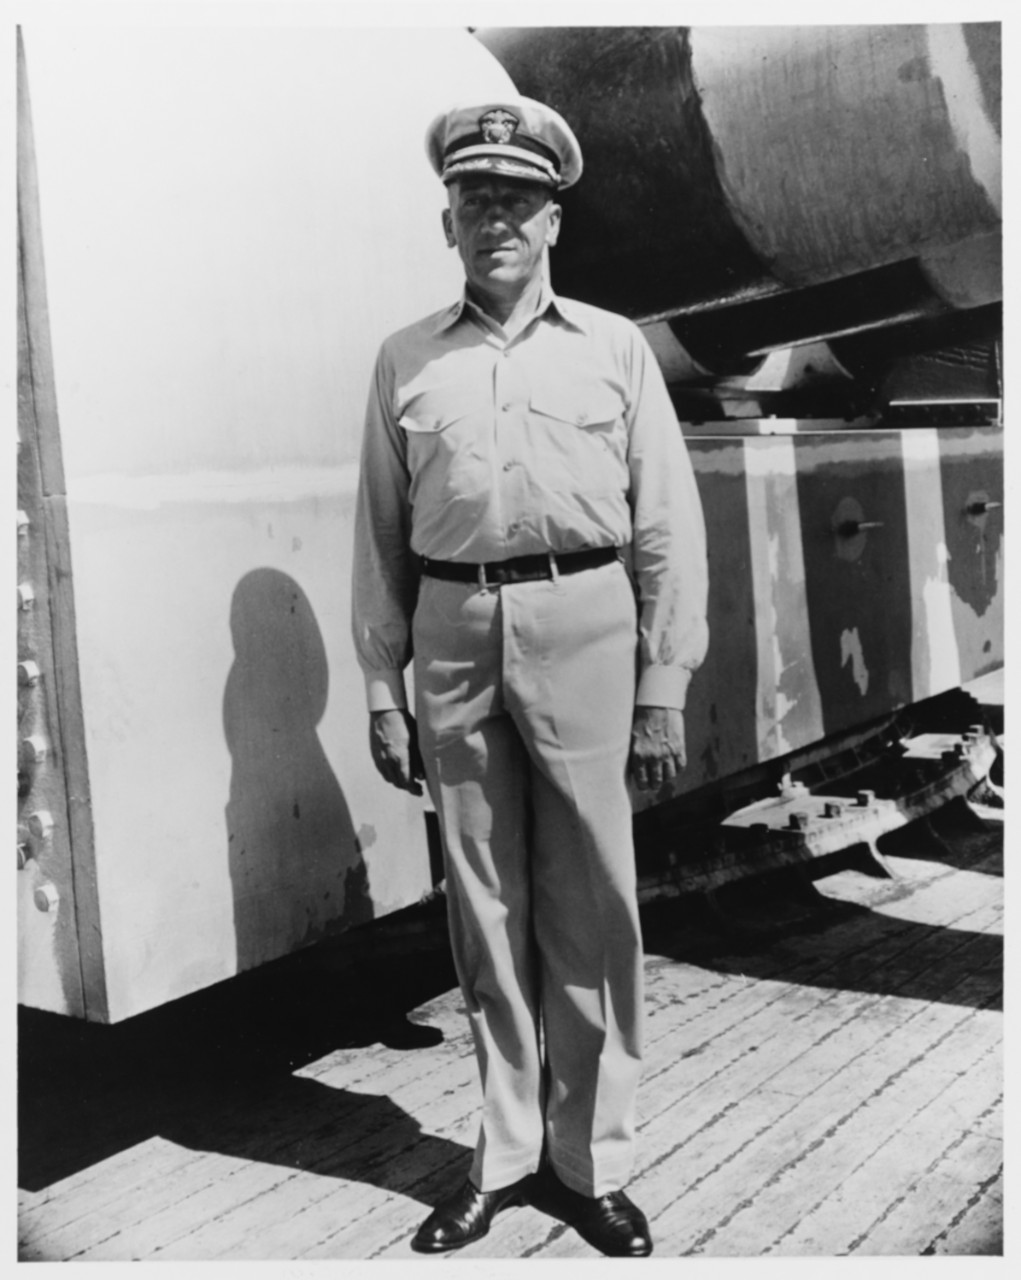 Captain T.G.W. Settle, USN